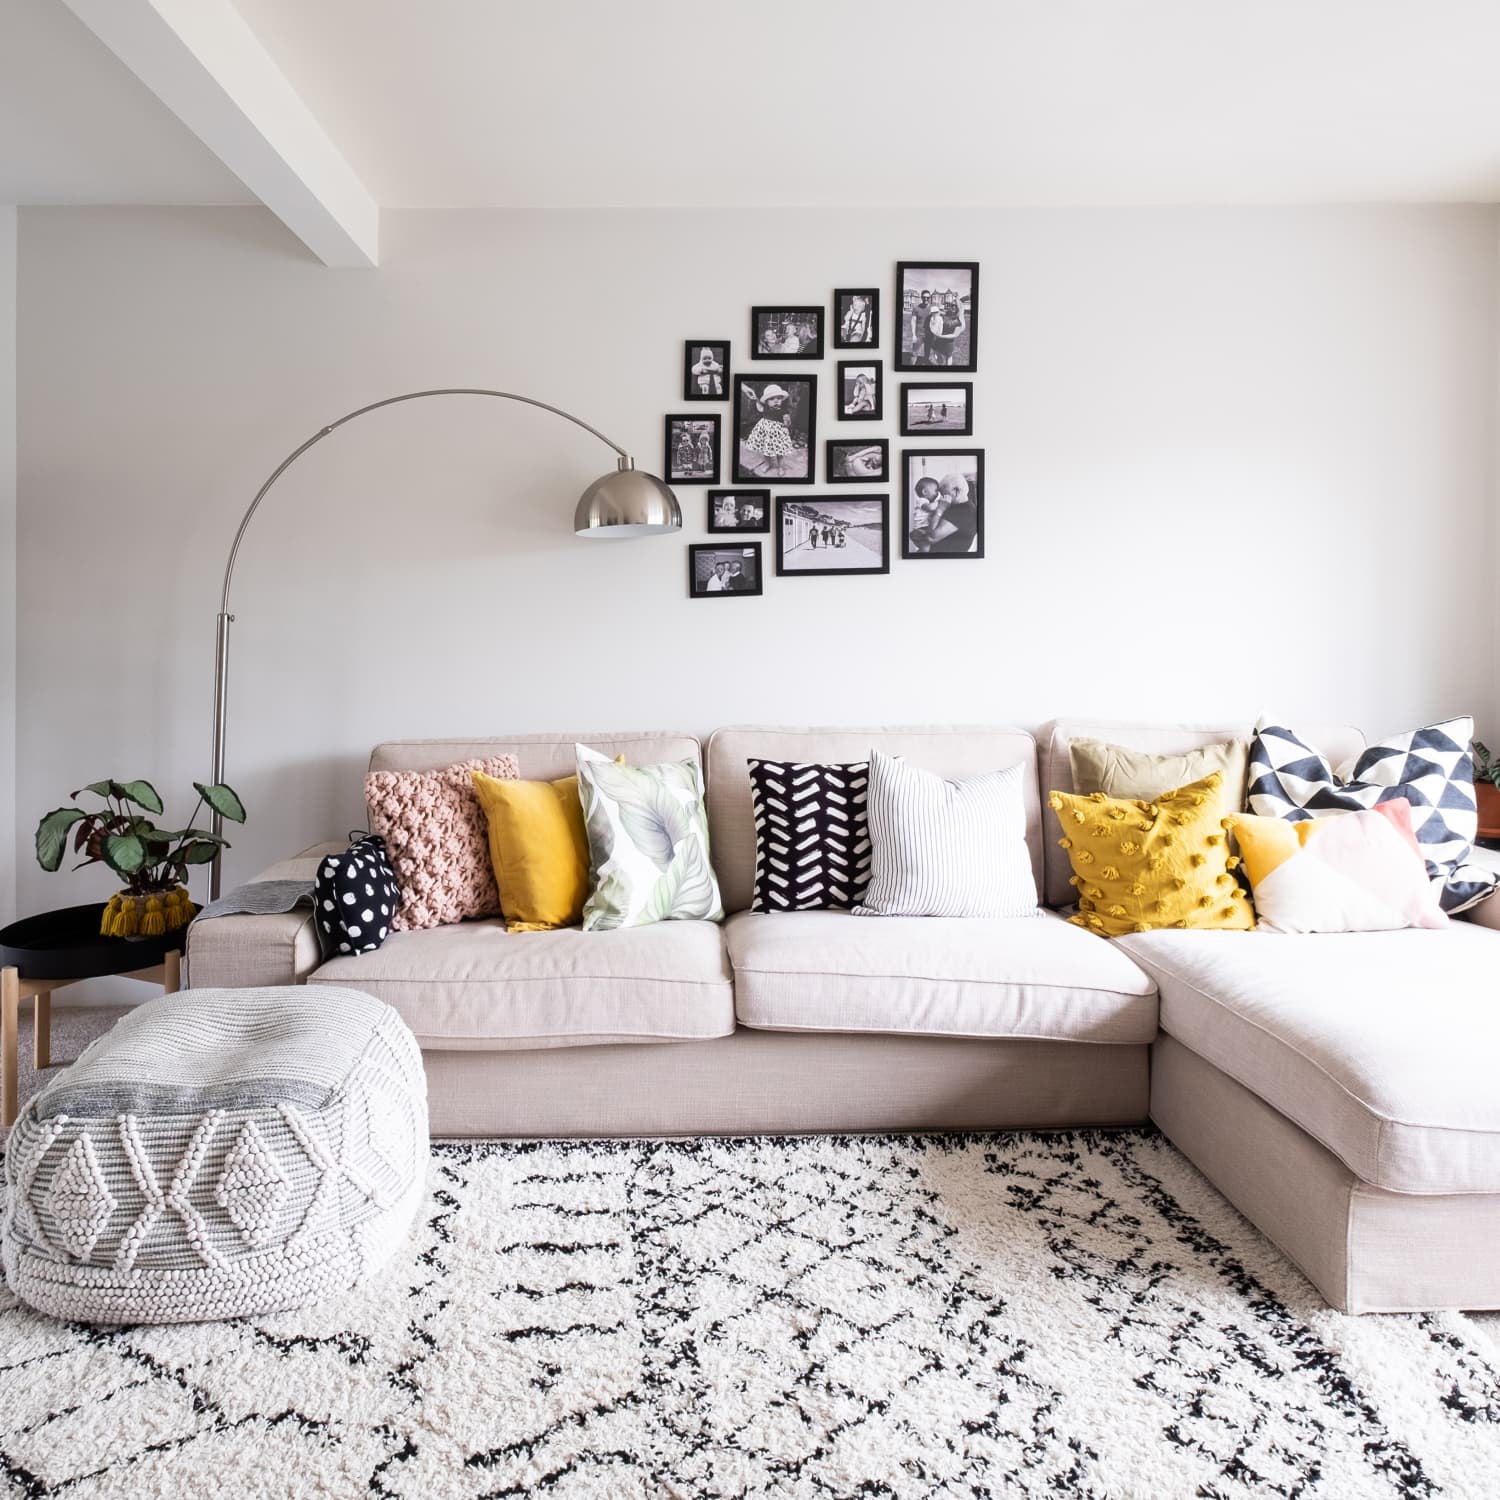 Paul-wesley Blanket Quilt Couch For Sofa Outdoor Living Room  Bedroom,decoration Accessories Child Teens Women Men